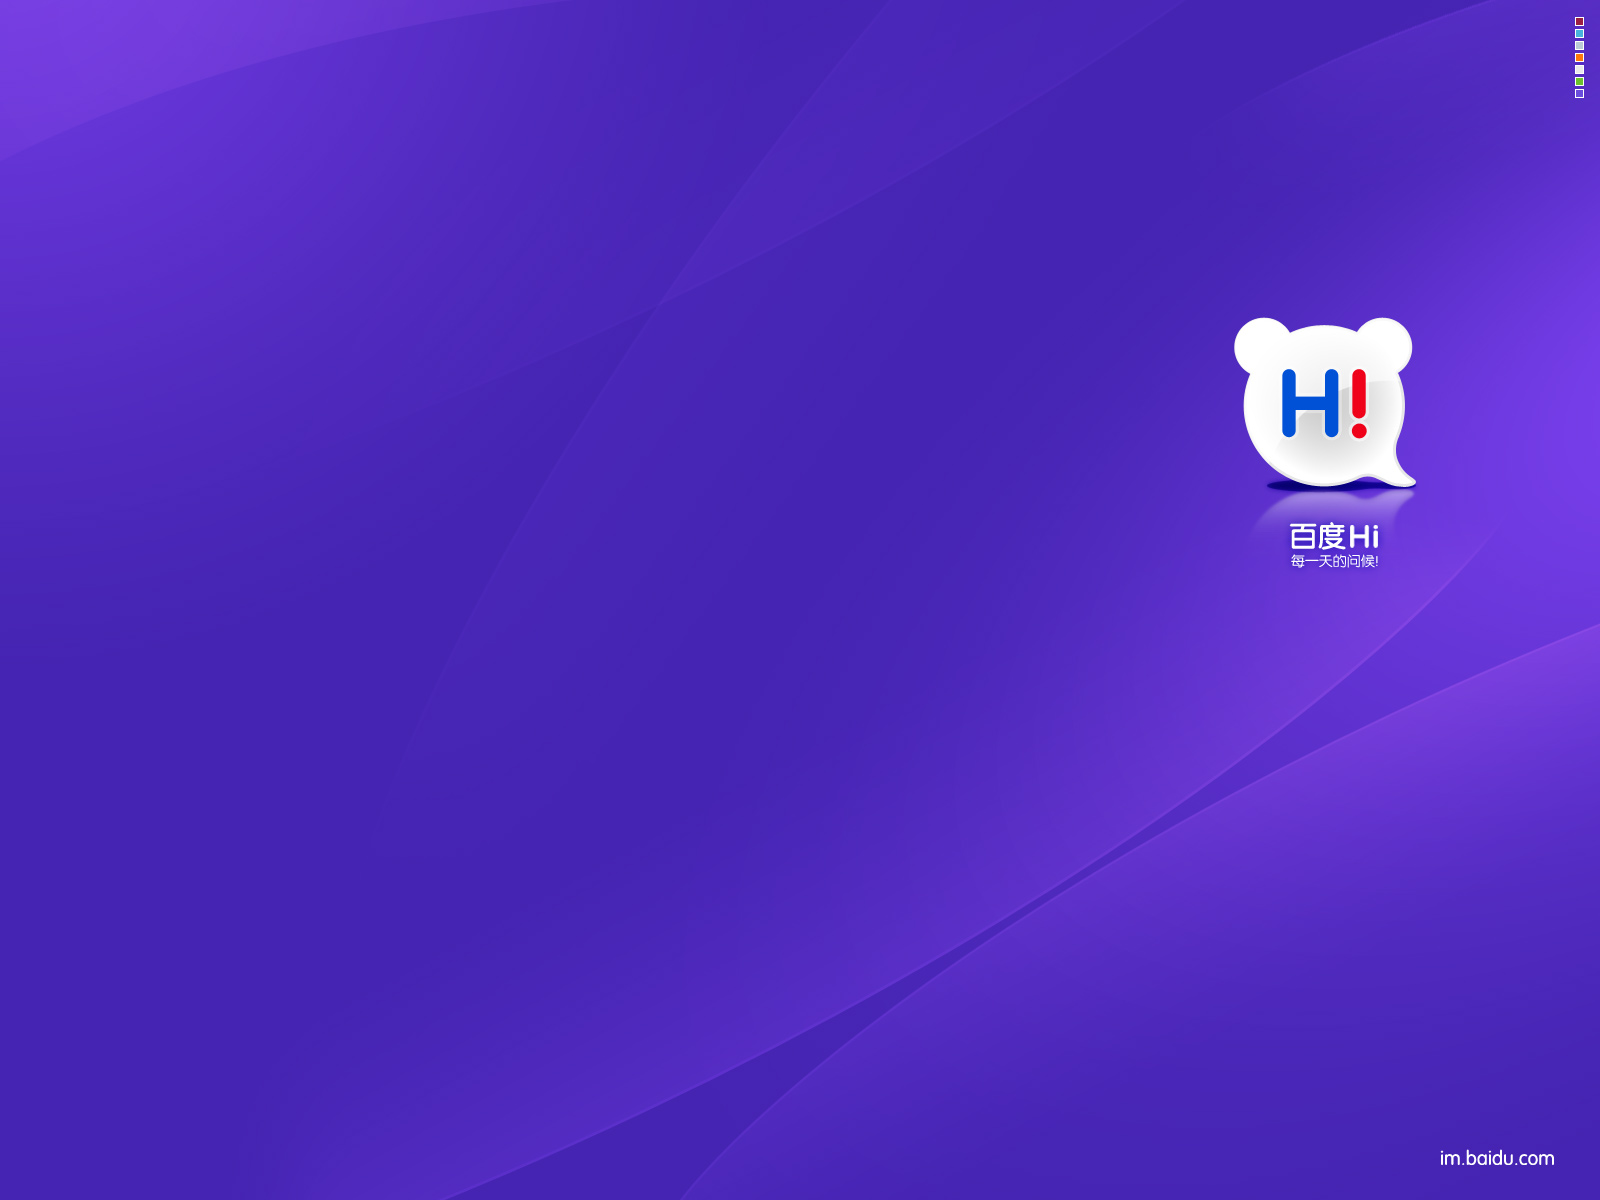 Télécharger des fonds d'écran Baidu_Salut HD